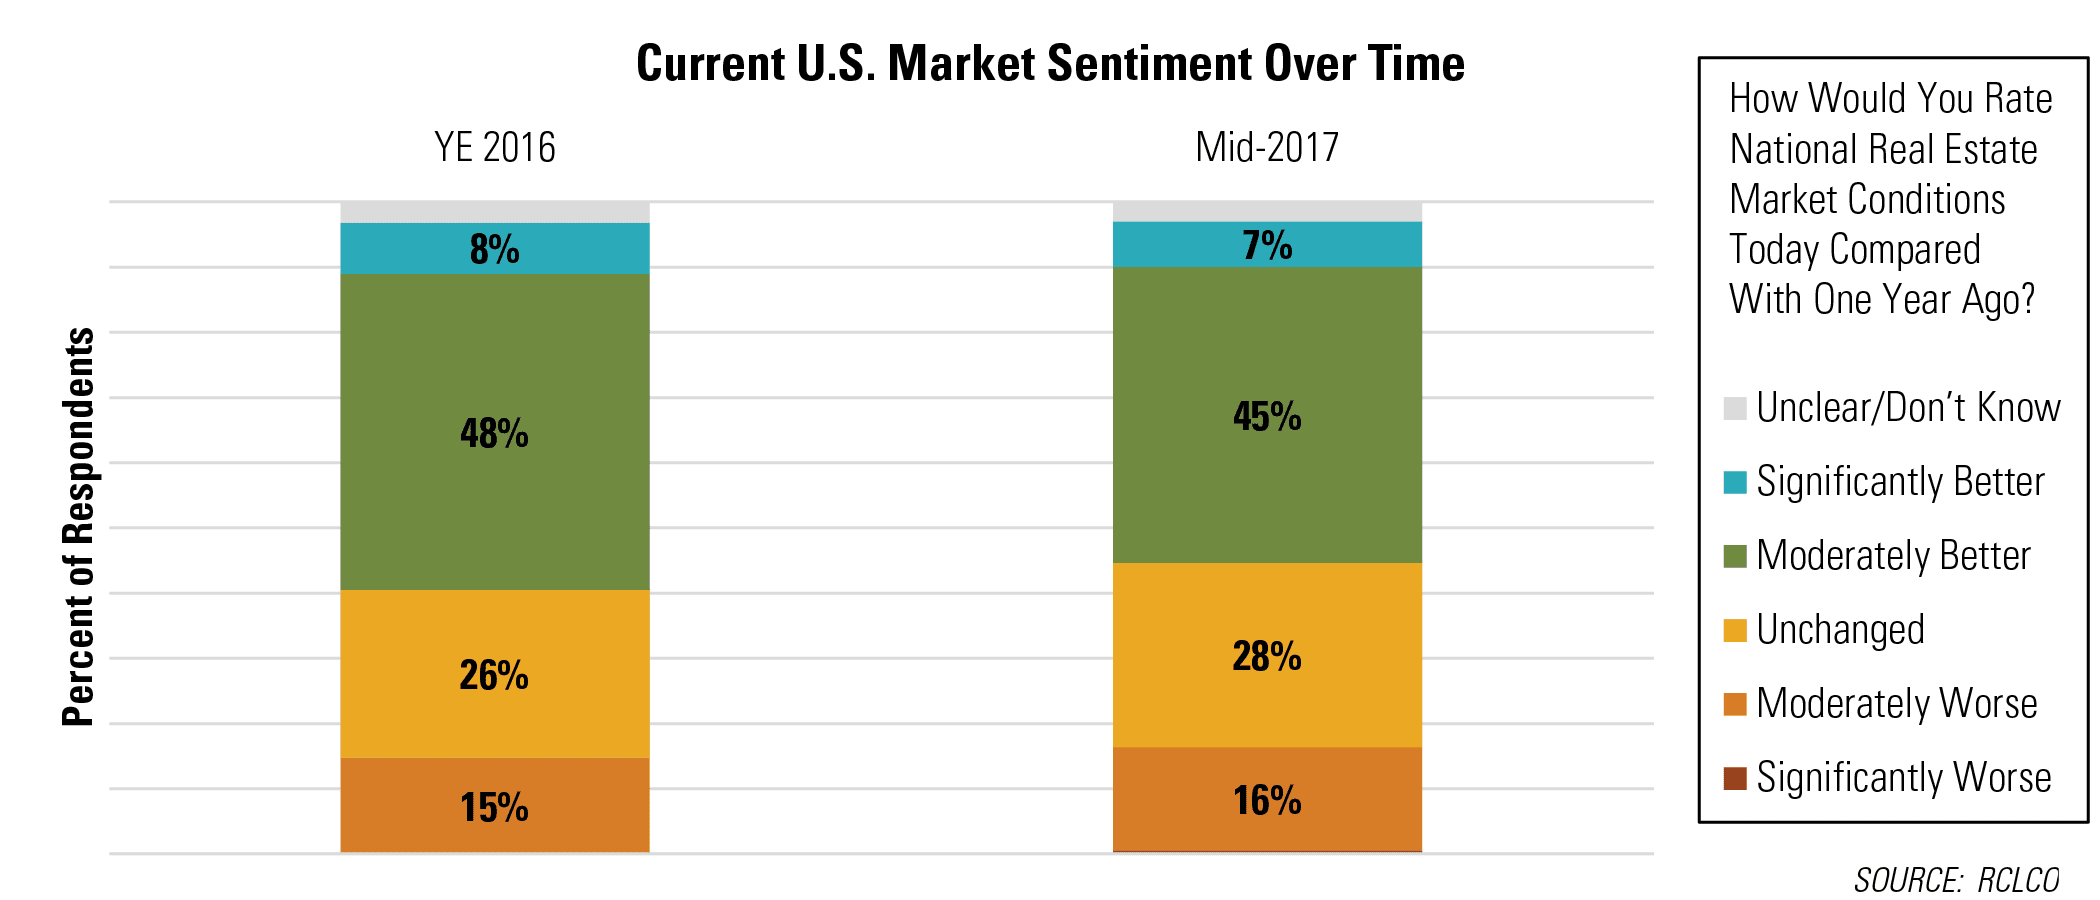 Current U.S. Market Sentiment Over Time